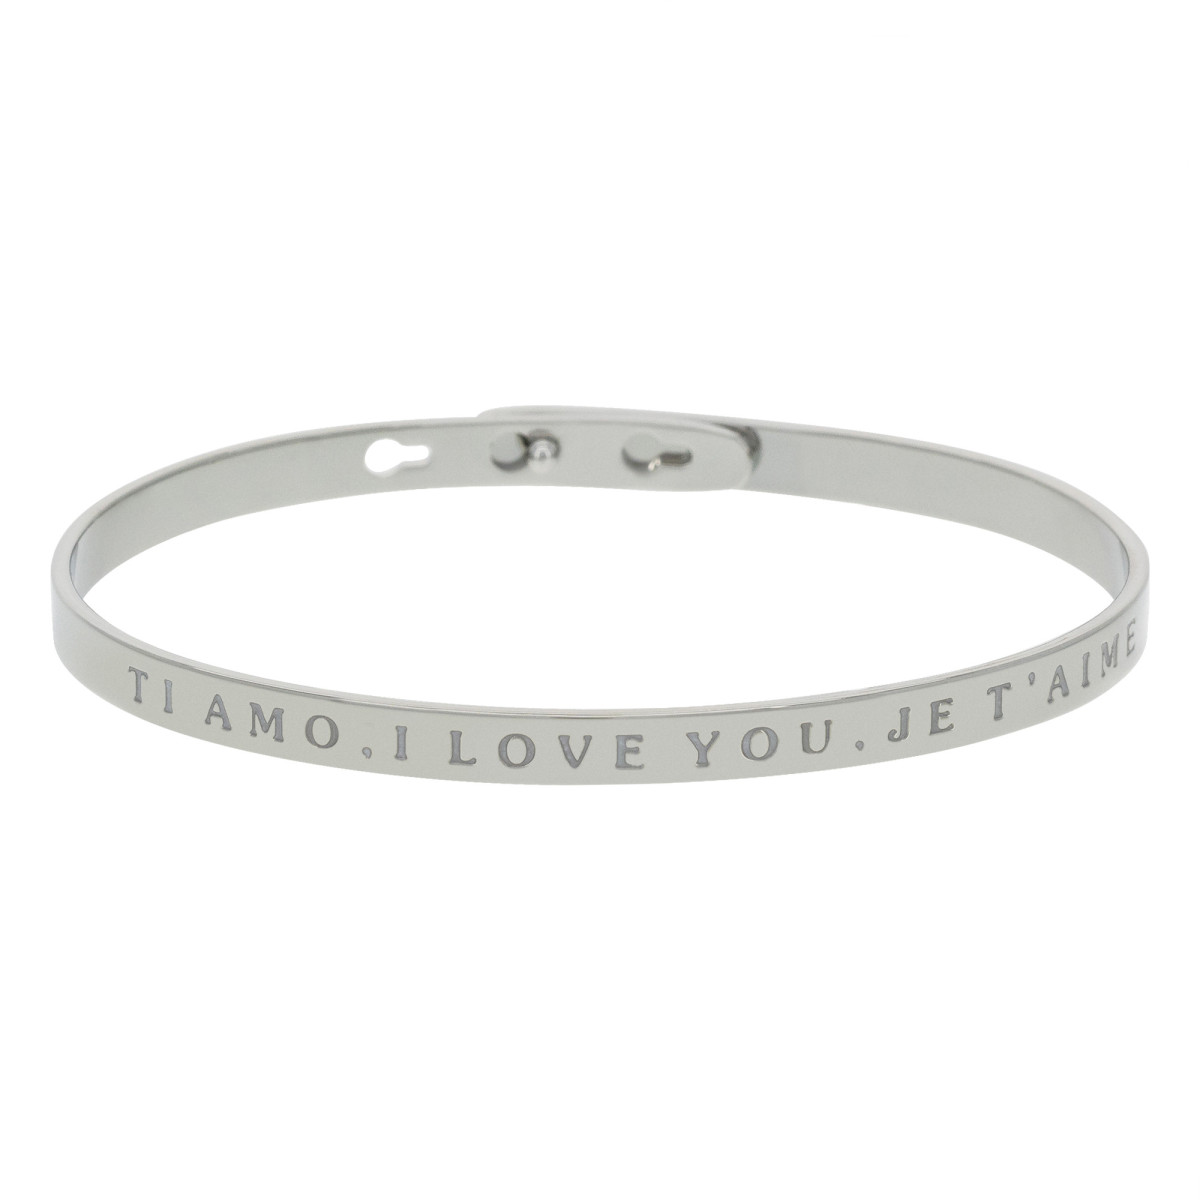 "TI AMO, I LOVE YOU, JE T'AIME" bracelet jonc argenté à message